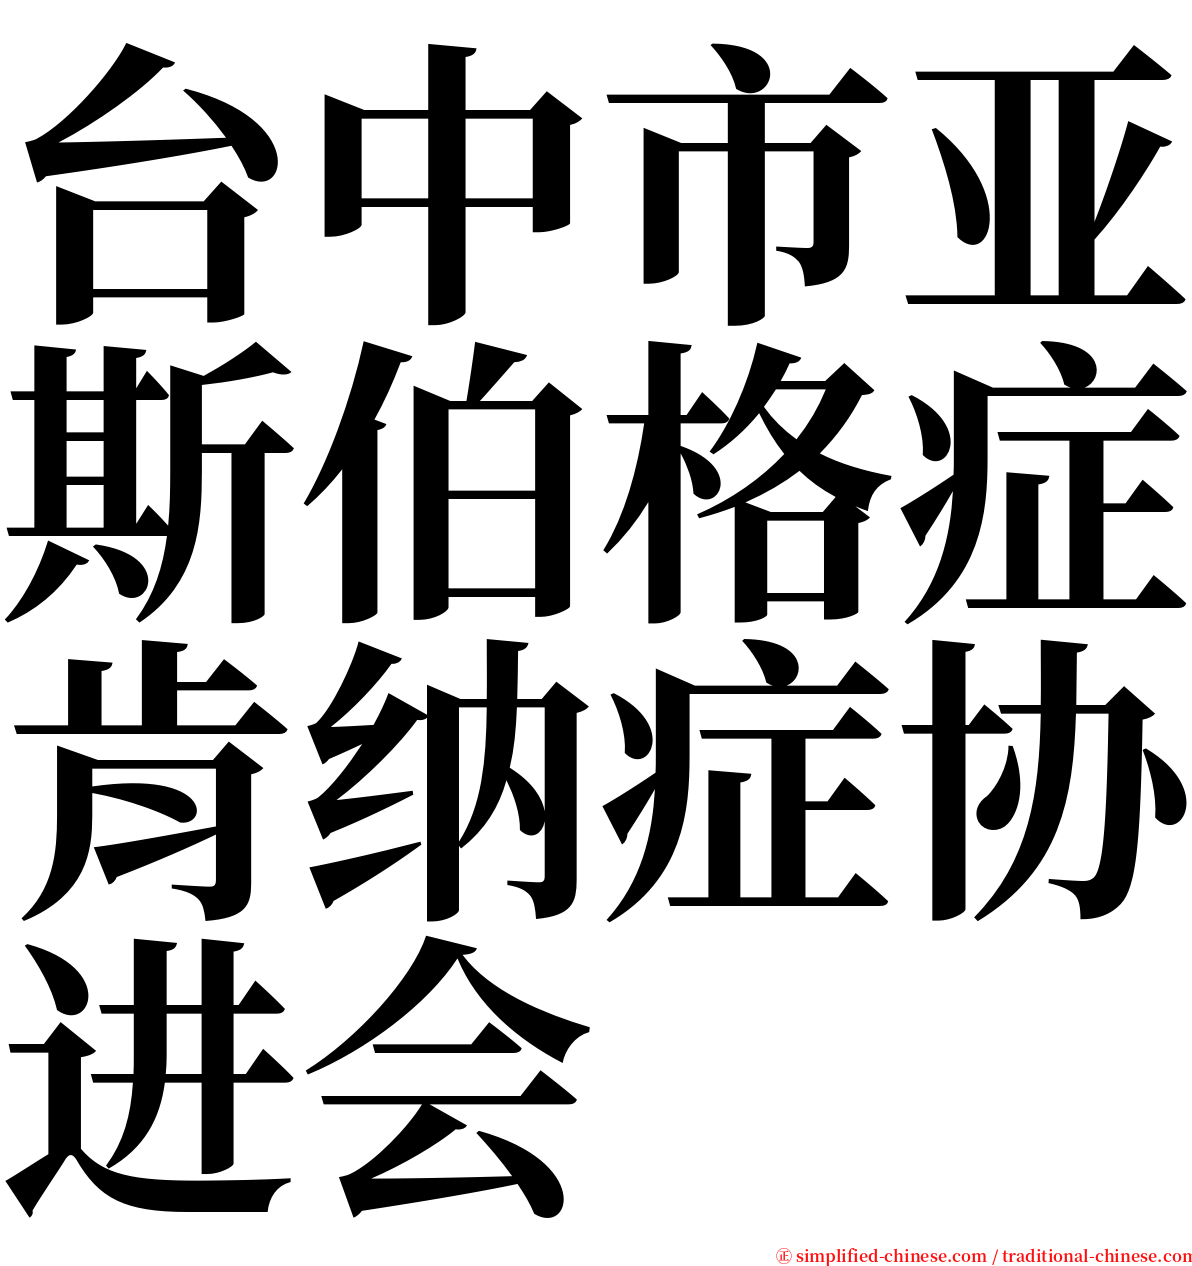 台中市亚斯伯格症肯纳症协进会 serif font